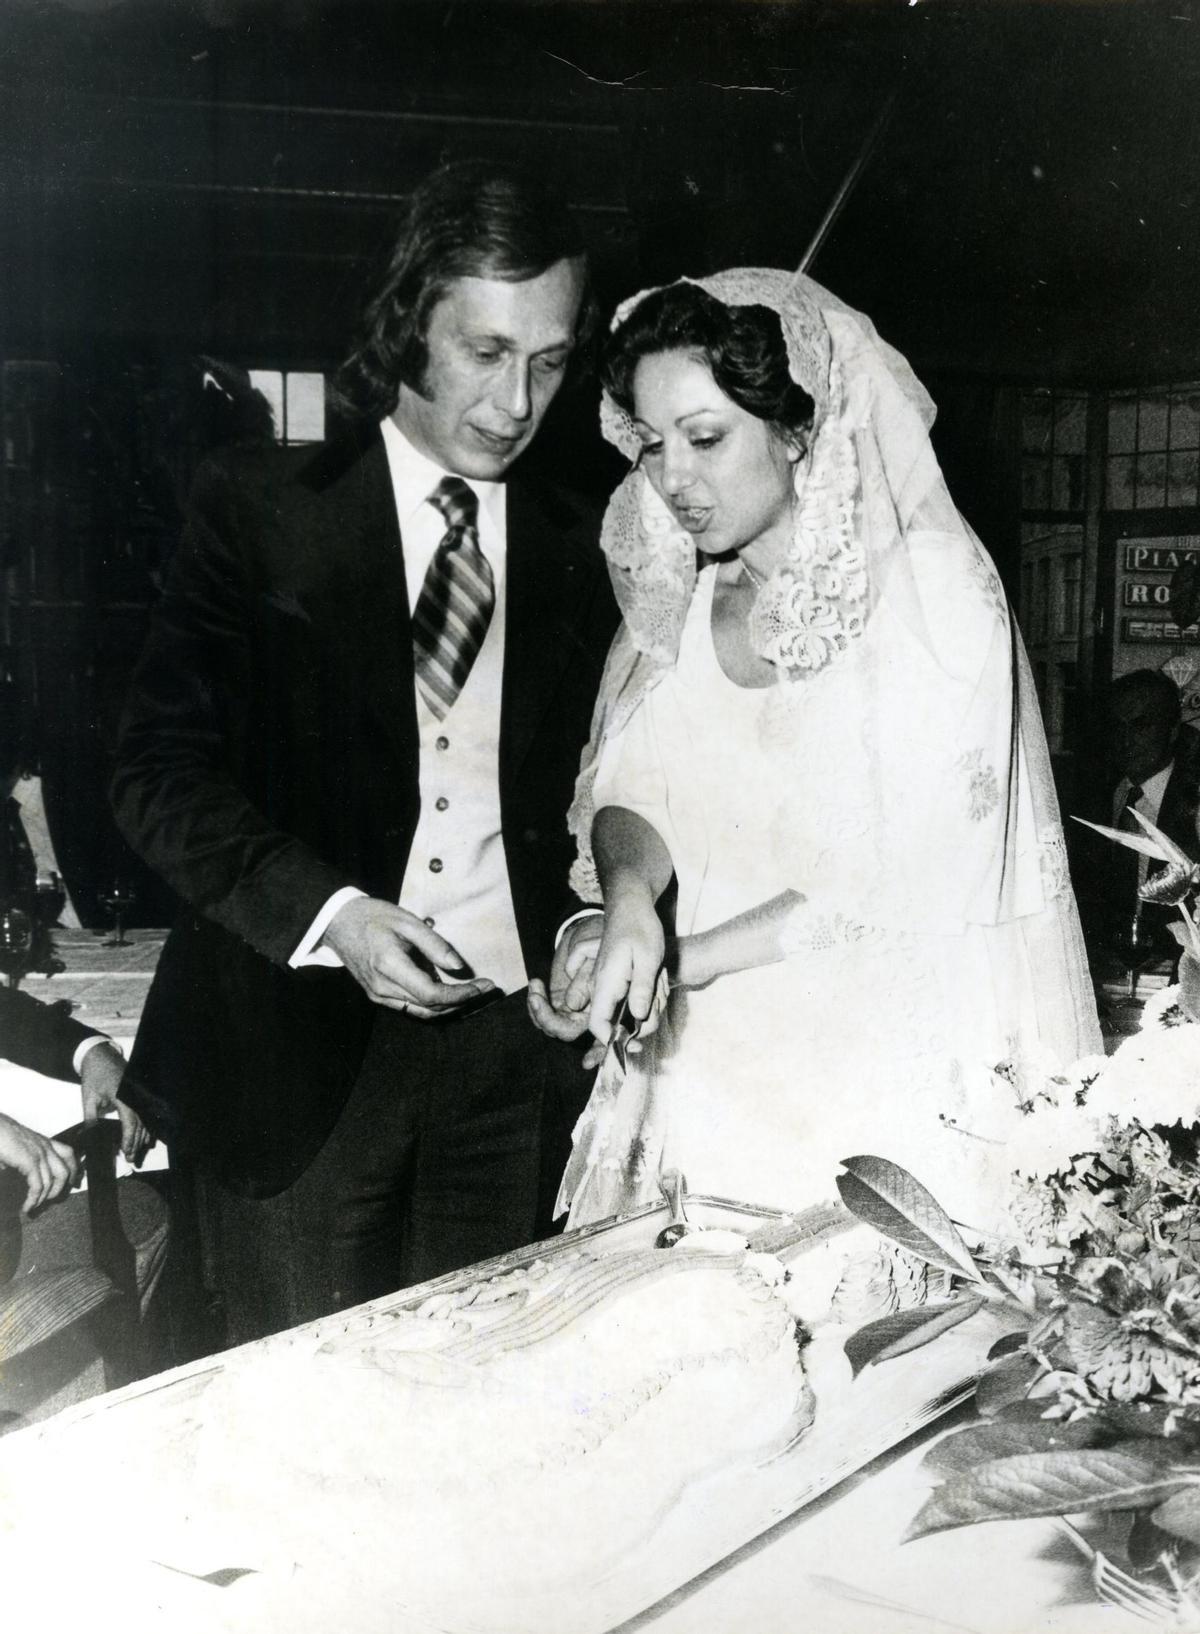 La boda de Paco de Lucía y Casilda Varela en Amsterdam en 1977.